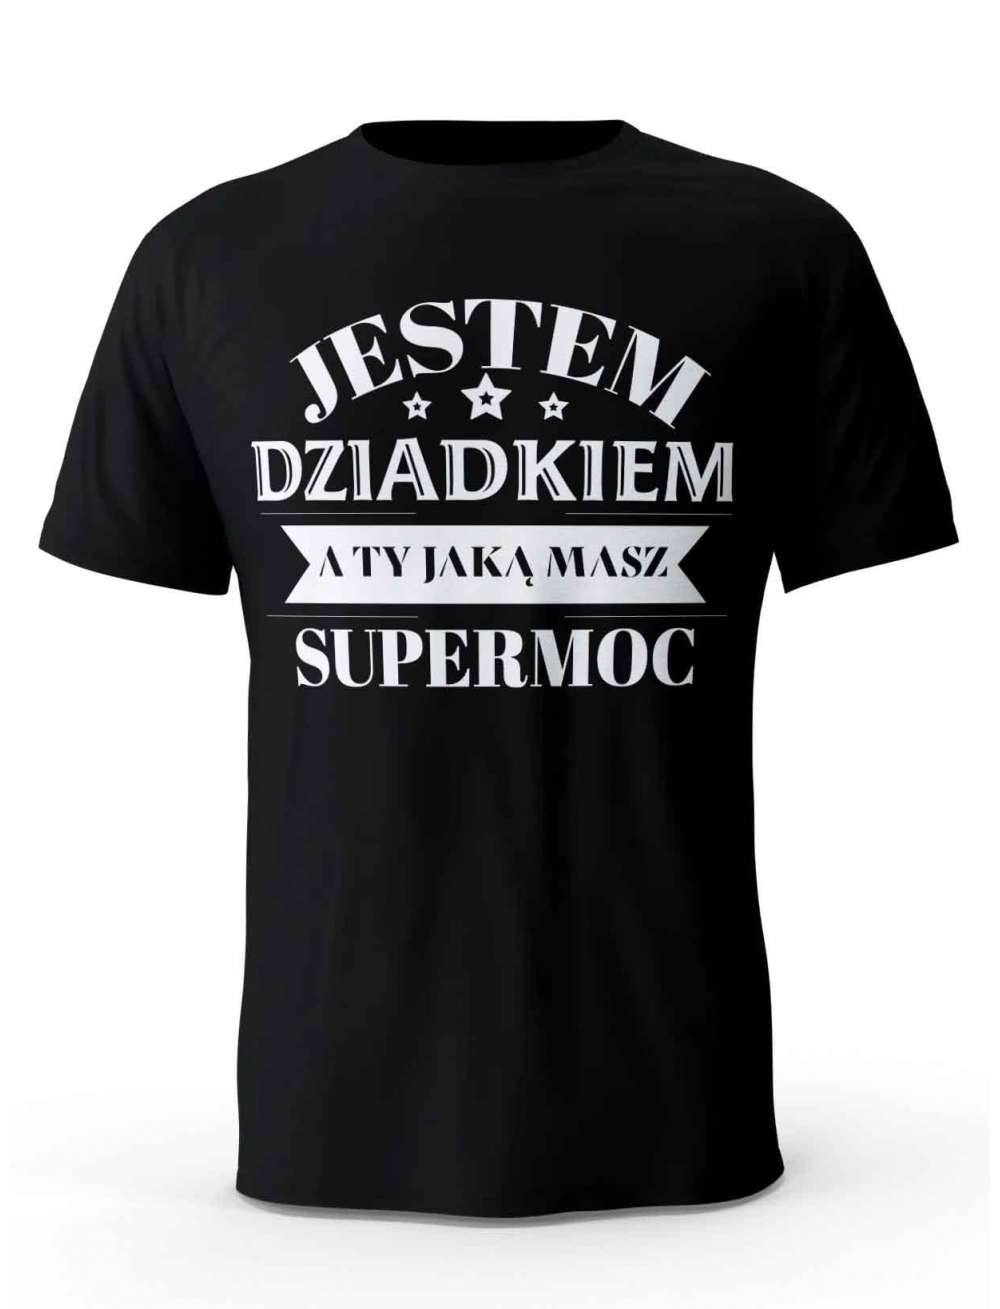 Koszulka Jestem Dziadkiem a Ty Jaką masz Supermoc, T-shirt dla Dziadka